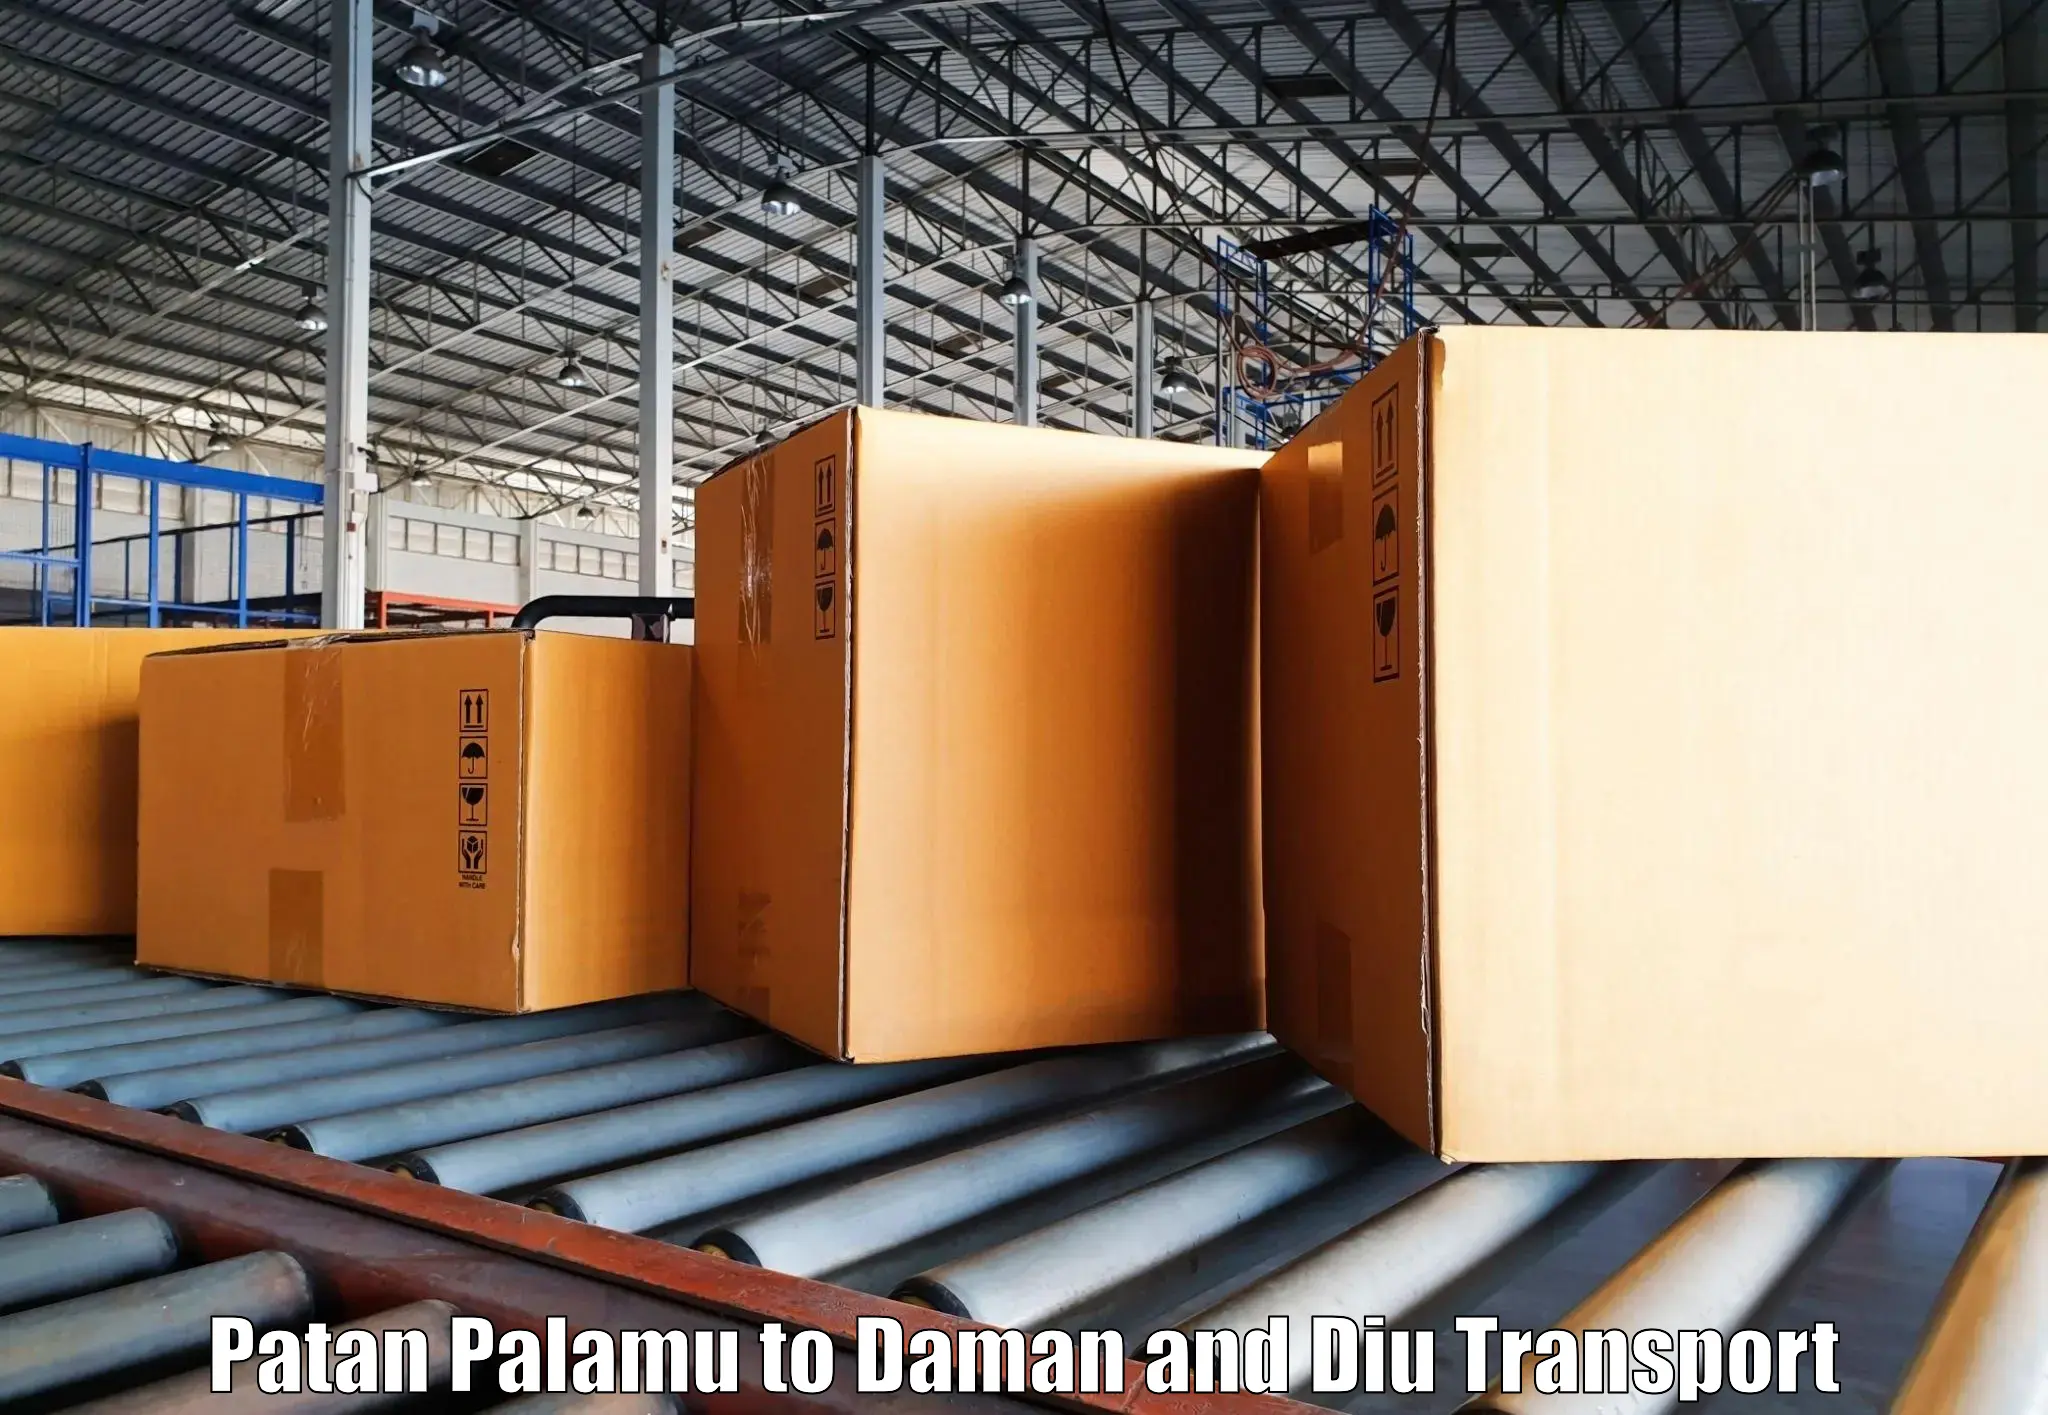 Cargo train transport services Patan Palamu to Daman and Diu